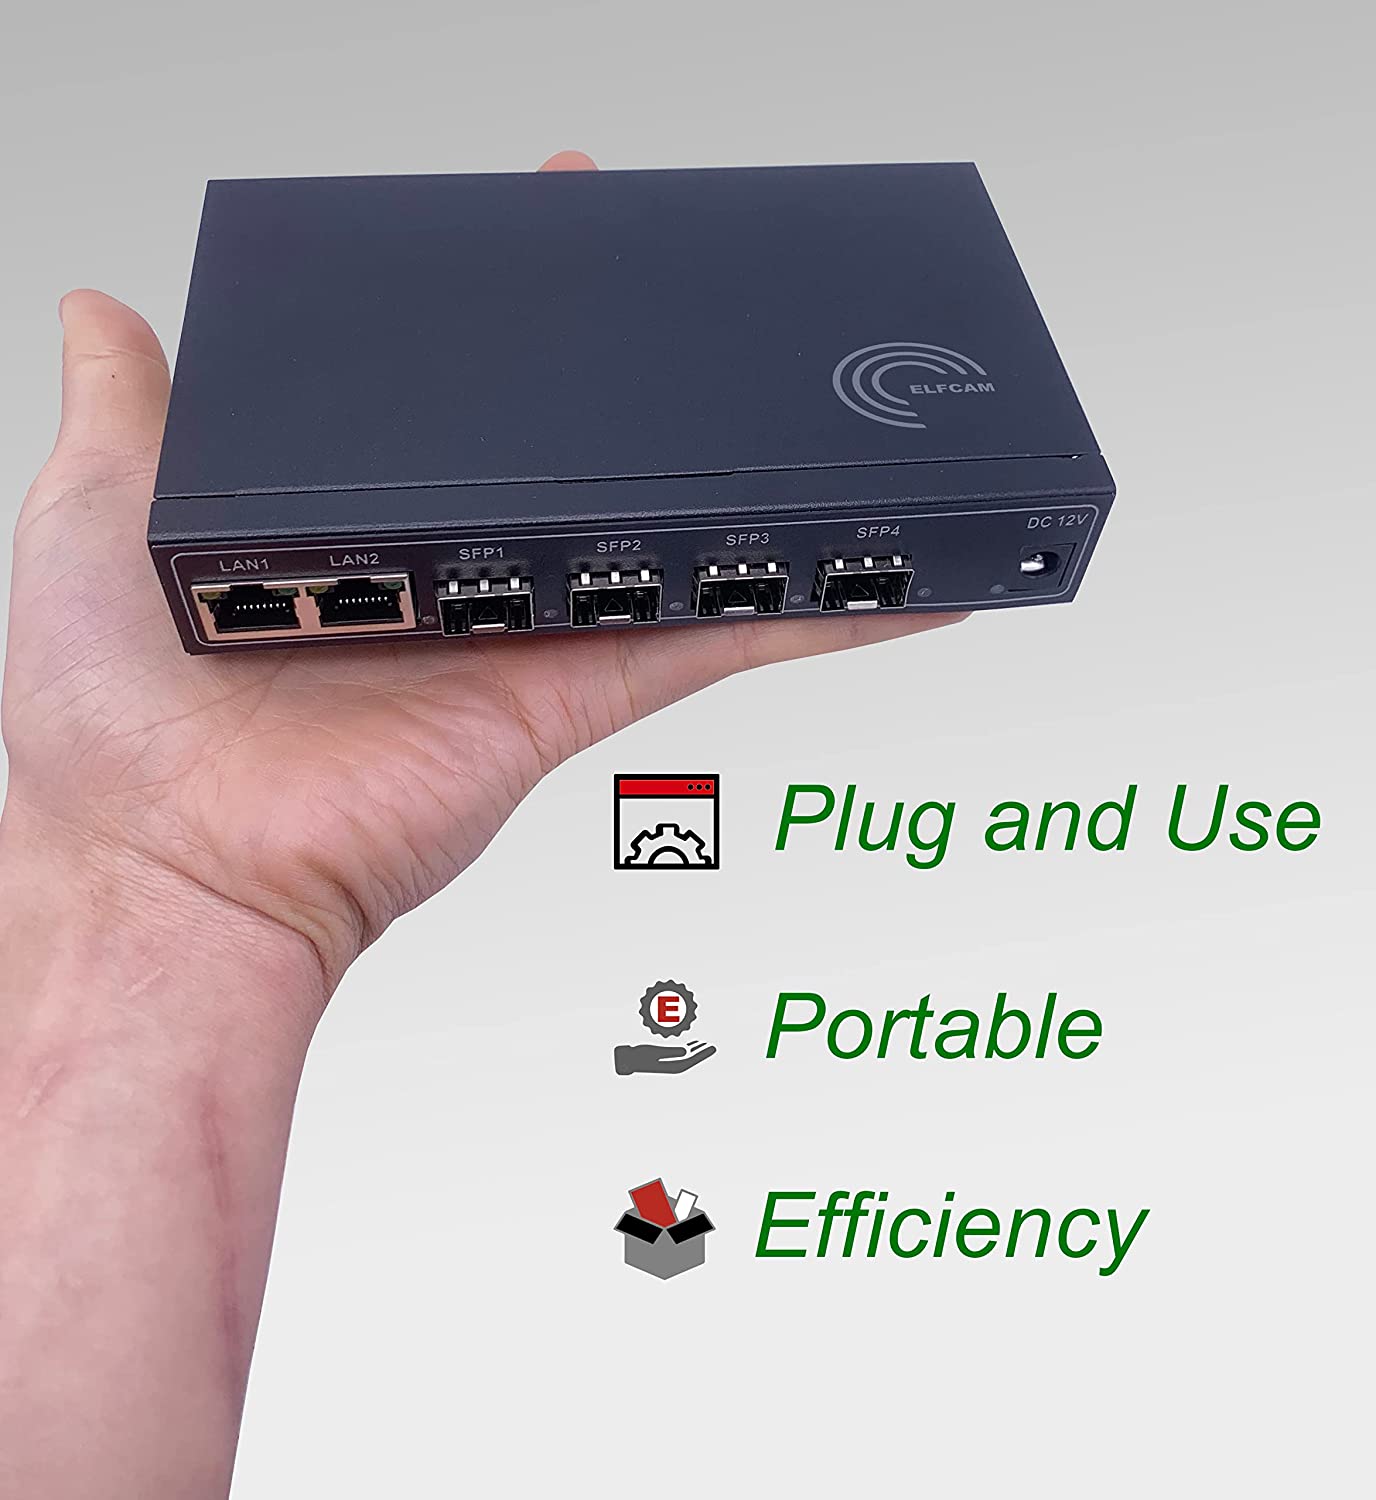 PoE Ethernet Switch with 2 Uplink Gigabit Ethernet Ports 10/100/1000Mbps,  Unmanaged Plug & Play, Robust Metal (8 PoE Ports)(REF:7813) – Elfcam -  Fiber Solution Specialist